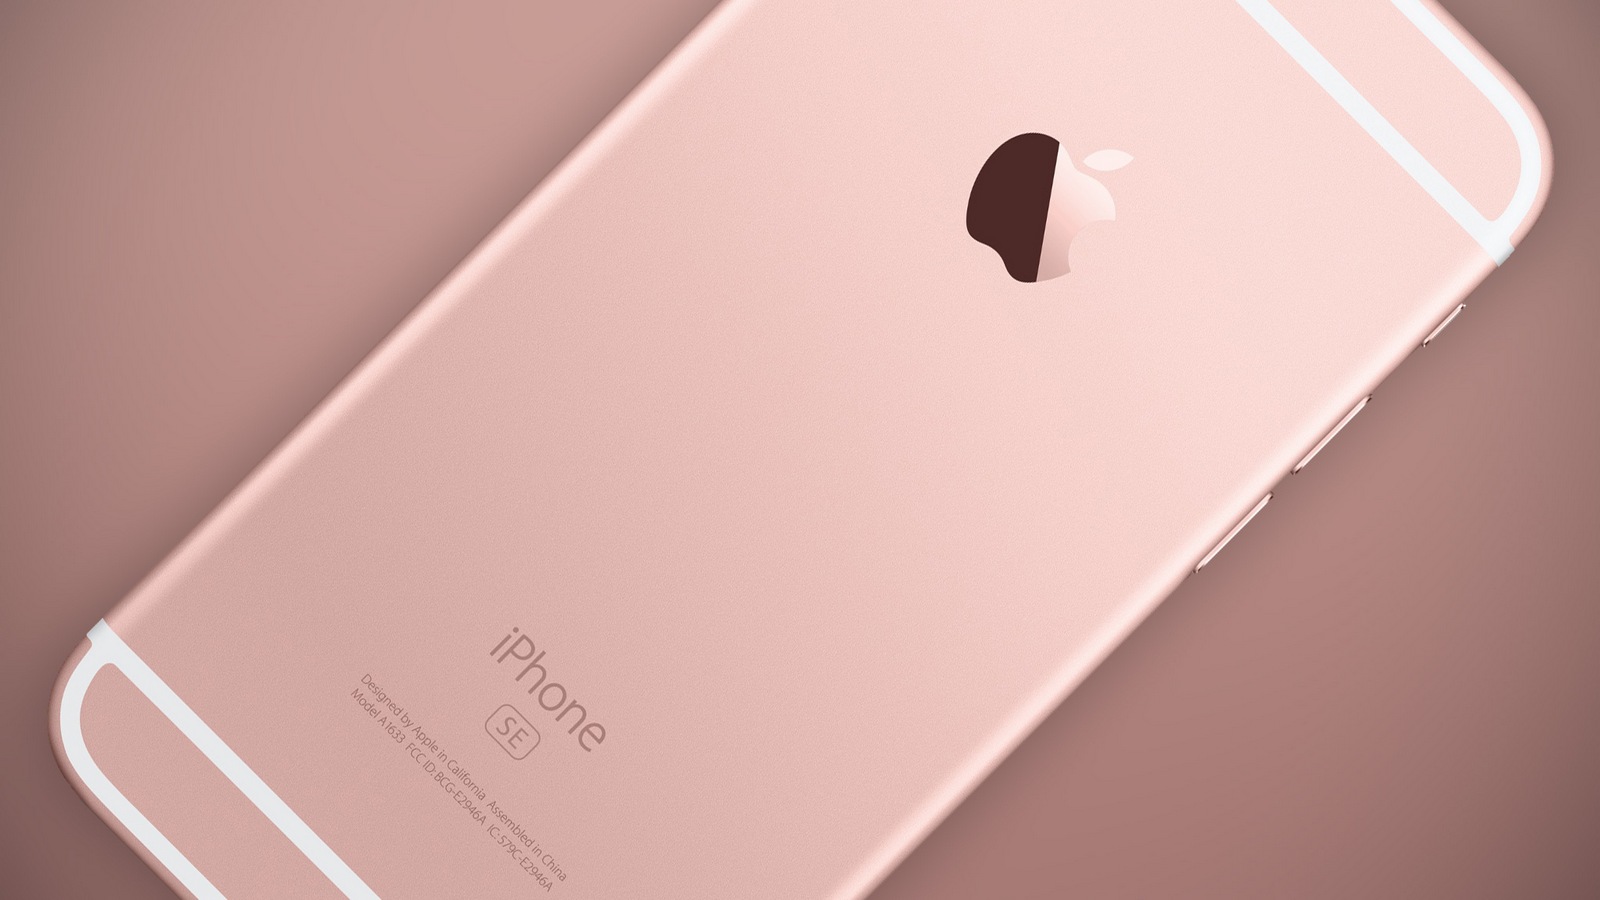 iPhone SE оценят в $400. iPhone 5s останется в продаже по цене в $200-250